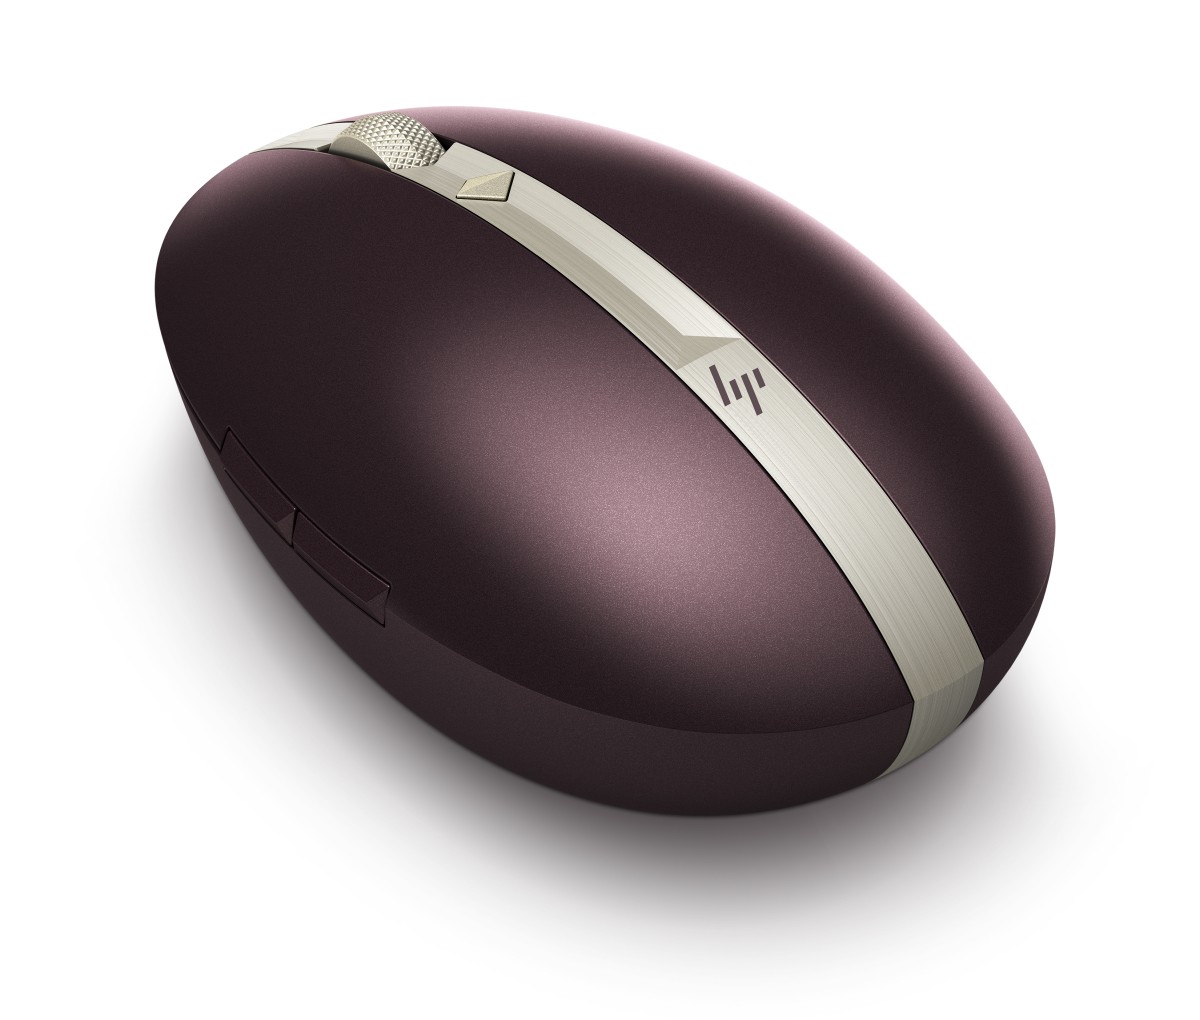 Bezdrôtová nabíjateľná myš HP Spectre 700 - bordeaux burgundy (5VD59AA)